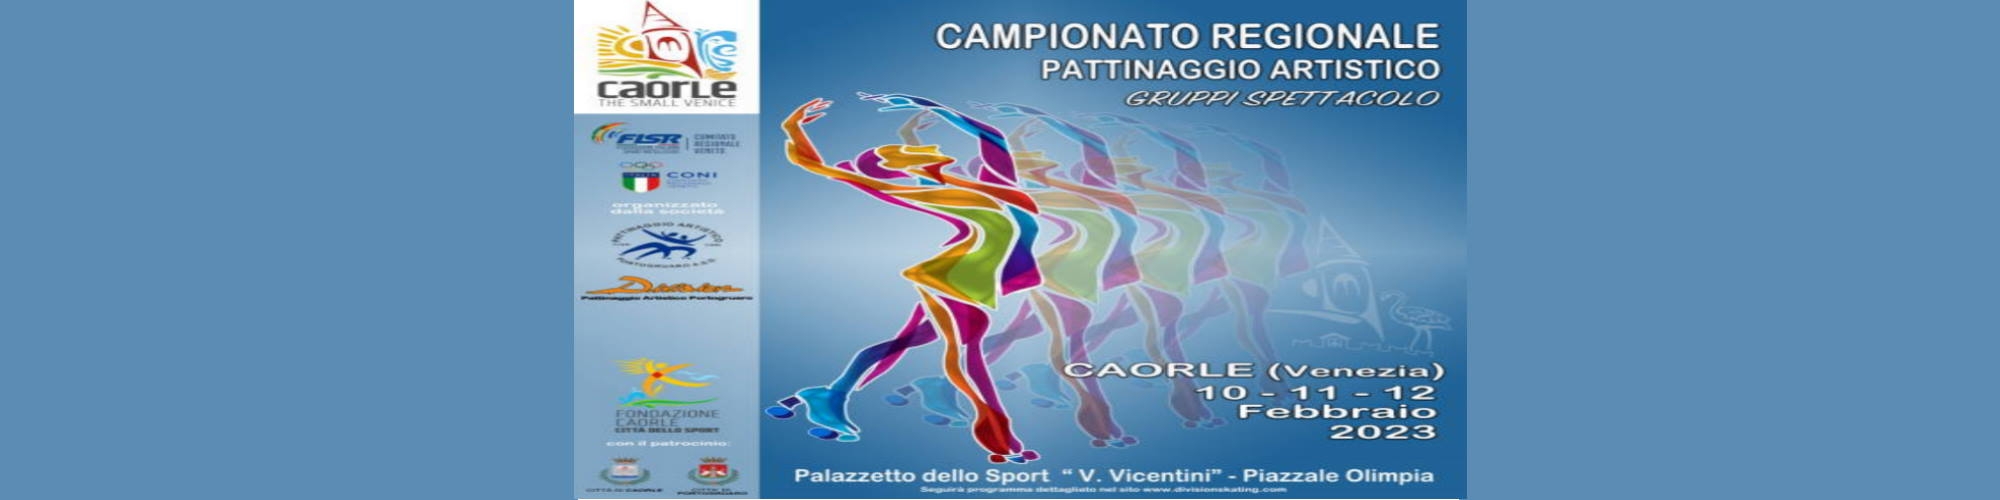 Immagine Campionato Regionale Pattinaggio Artistico - 10-11-12 FEBBRAIO